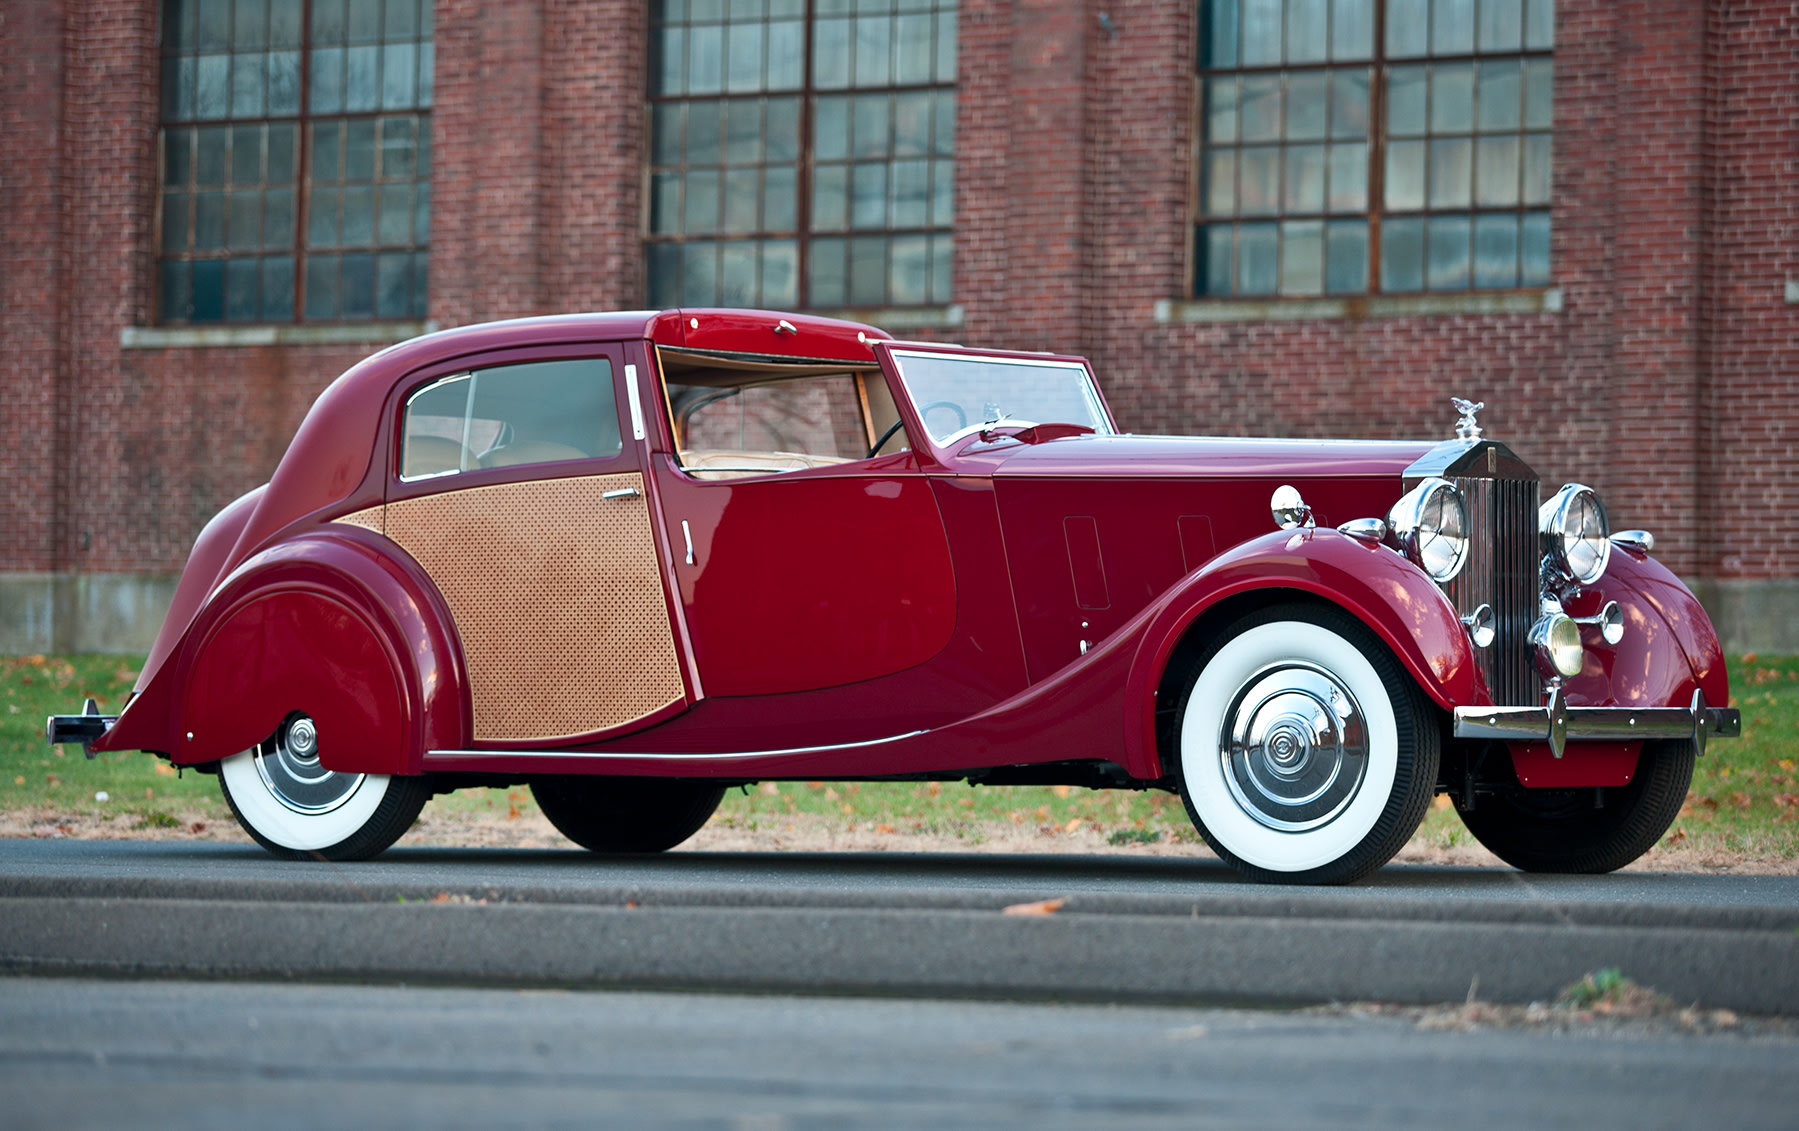 1937 Rolls-Royce Phantom III Sedanca de Ville